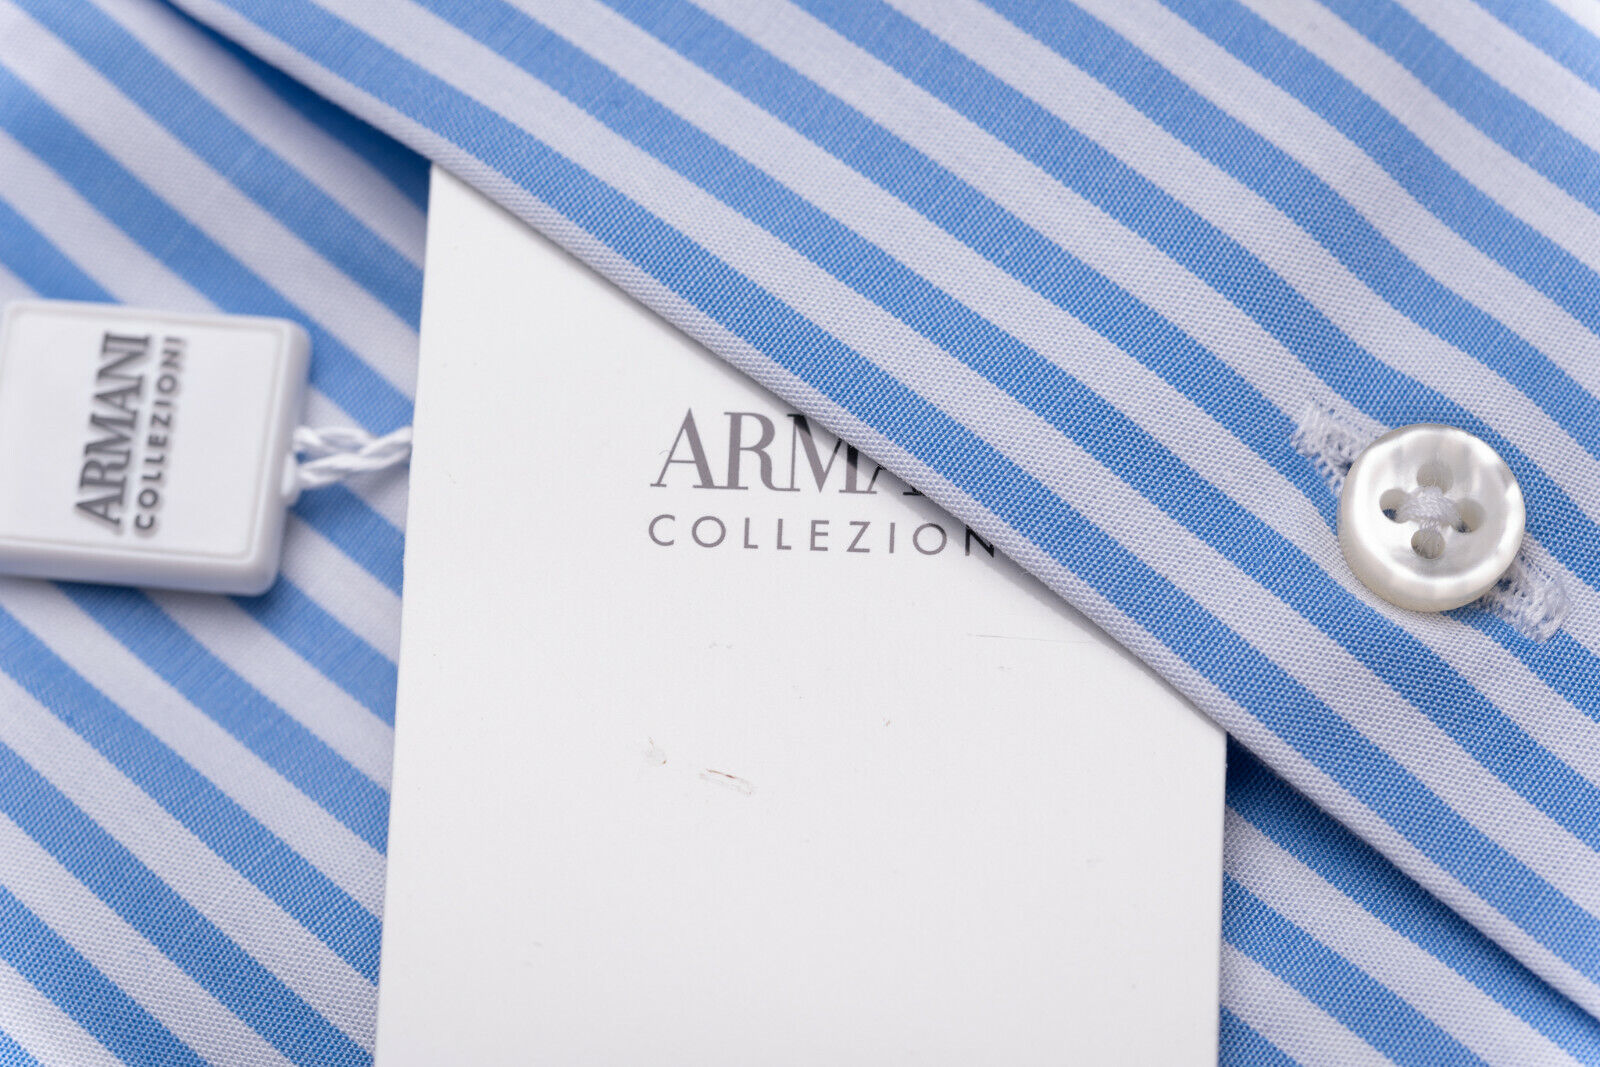 189$ GIORGIO ARMANI COLLEZIONI Dress Shirt Cotton White Blue Striped Modern  Fit